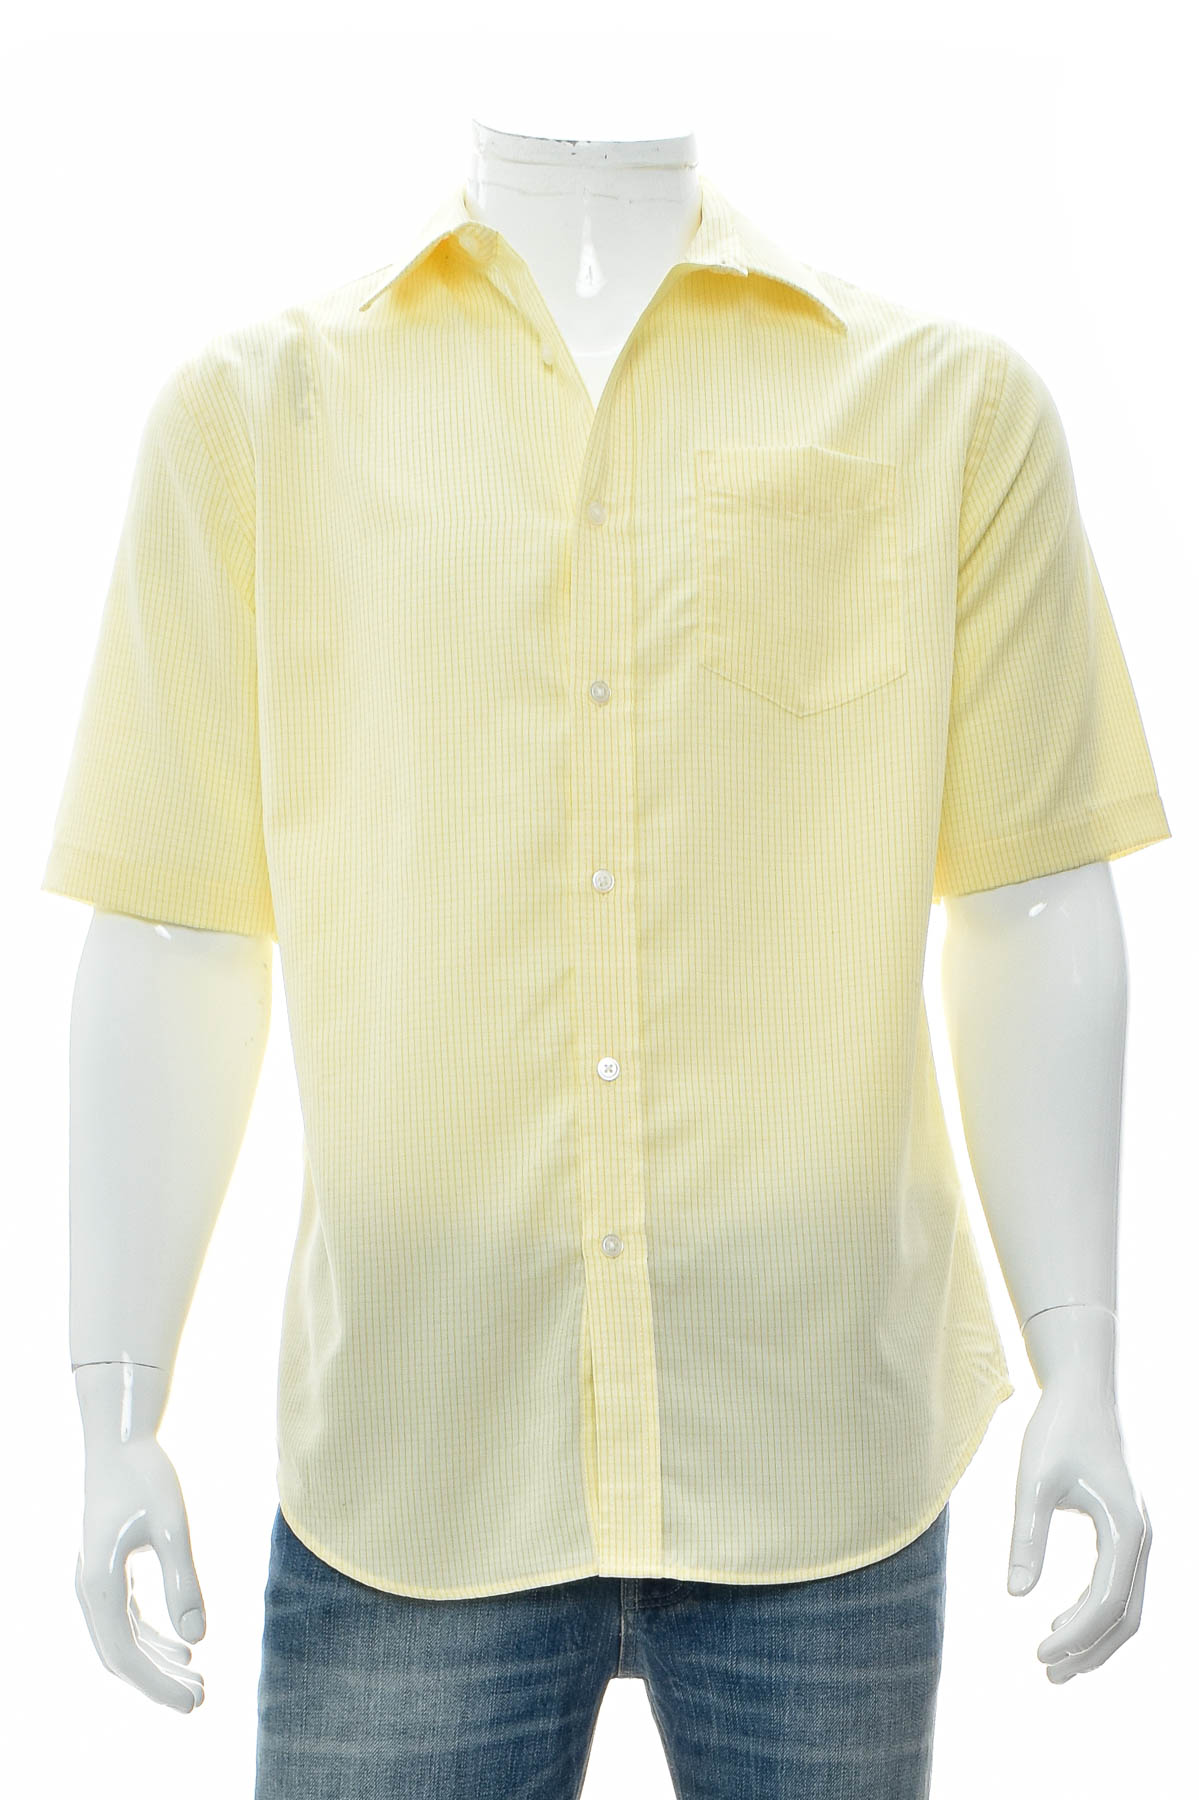 Ανδρικό πουκάμισο - Croft & Barrow - 0